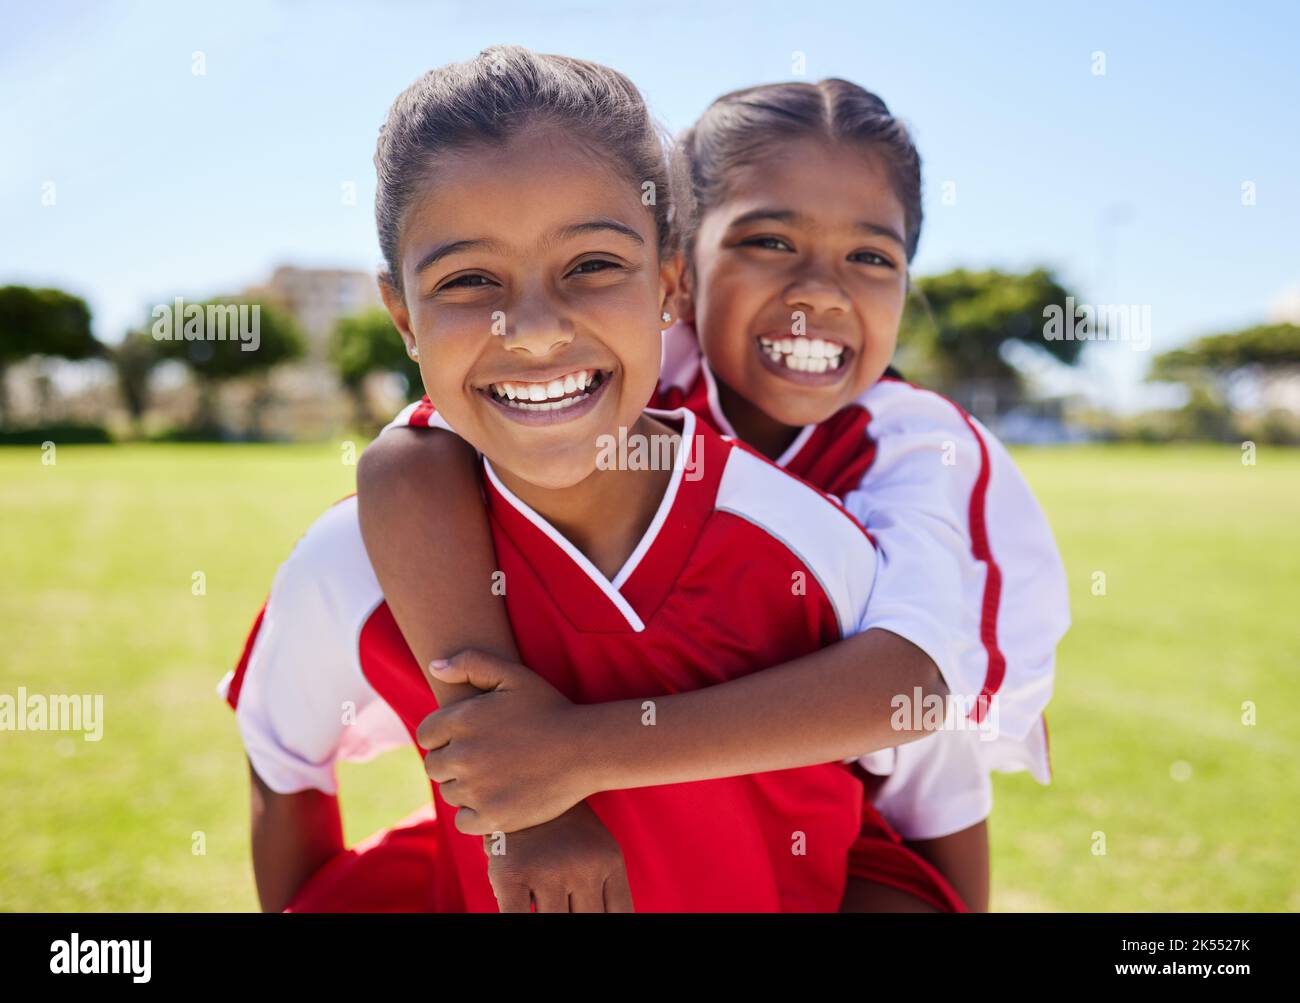 Les filles, les amis et les portraits sourient sur le terrain de football en s'amusant avant de s'entraîner pour le match, le jeu ou la compétition. Terrain de football, sports et enfants Banque D'Images